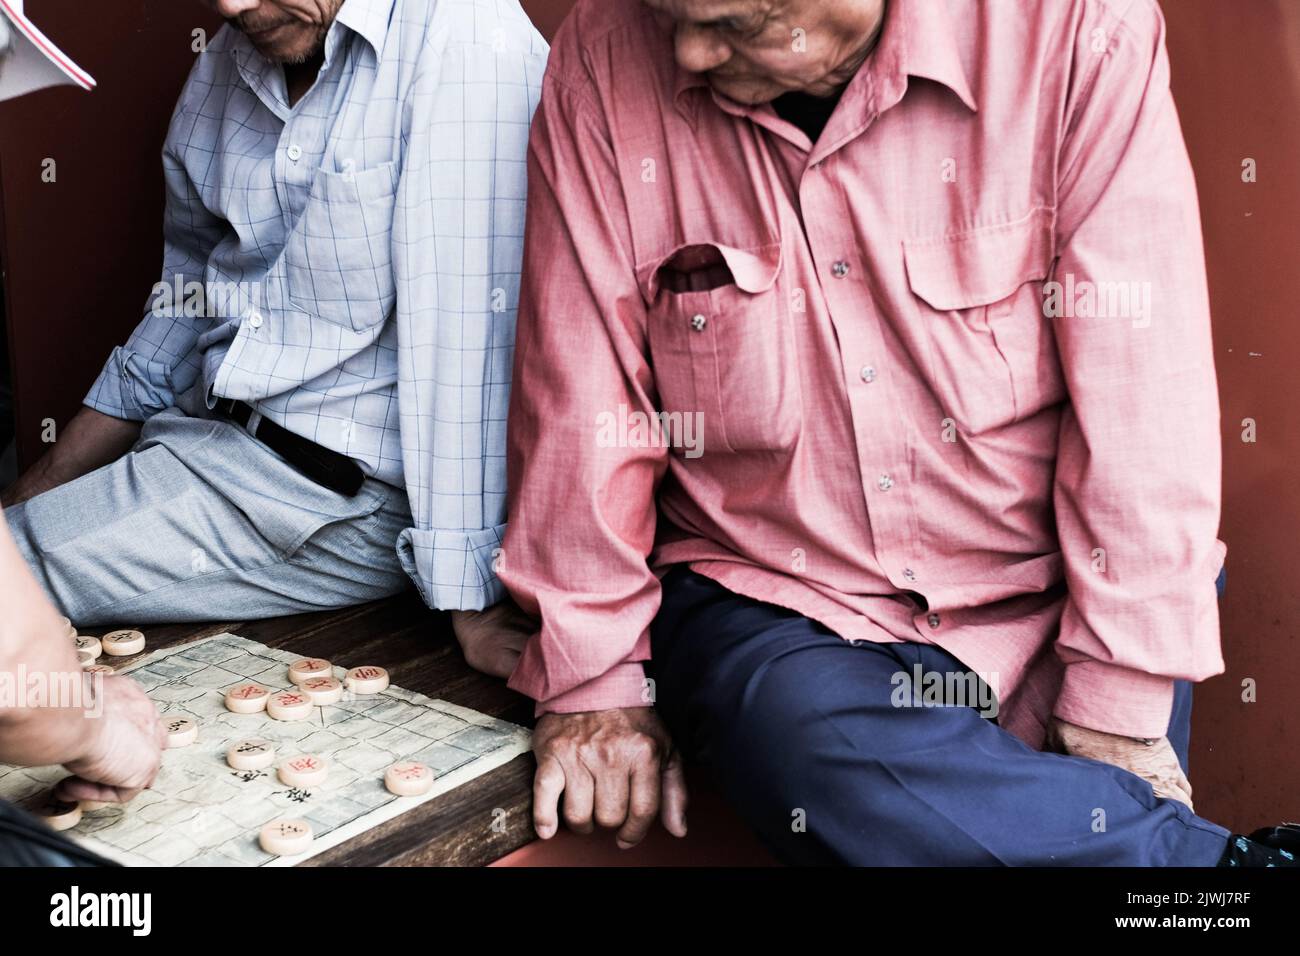 Uomini vietnamiti che giocano una partita di cờ tướng (alias Xiangqi, o scacchi cinesi) a Cabramatta — Sydney, Australia Foto Stock